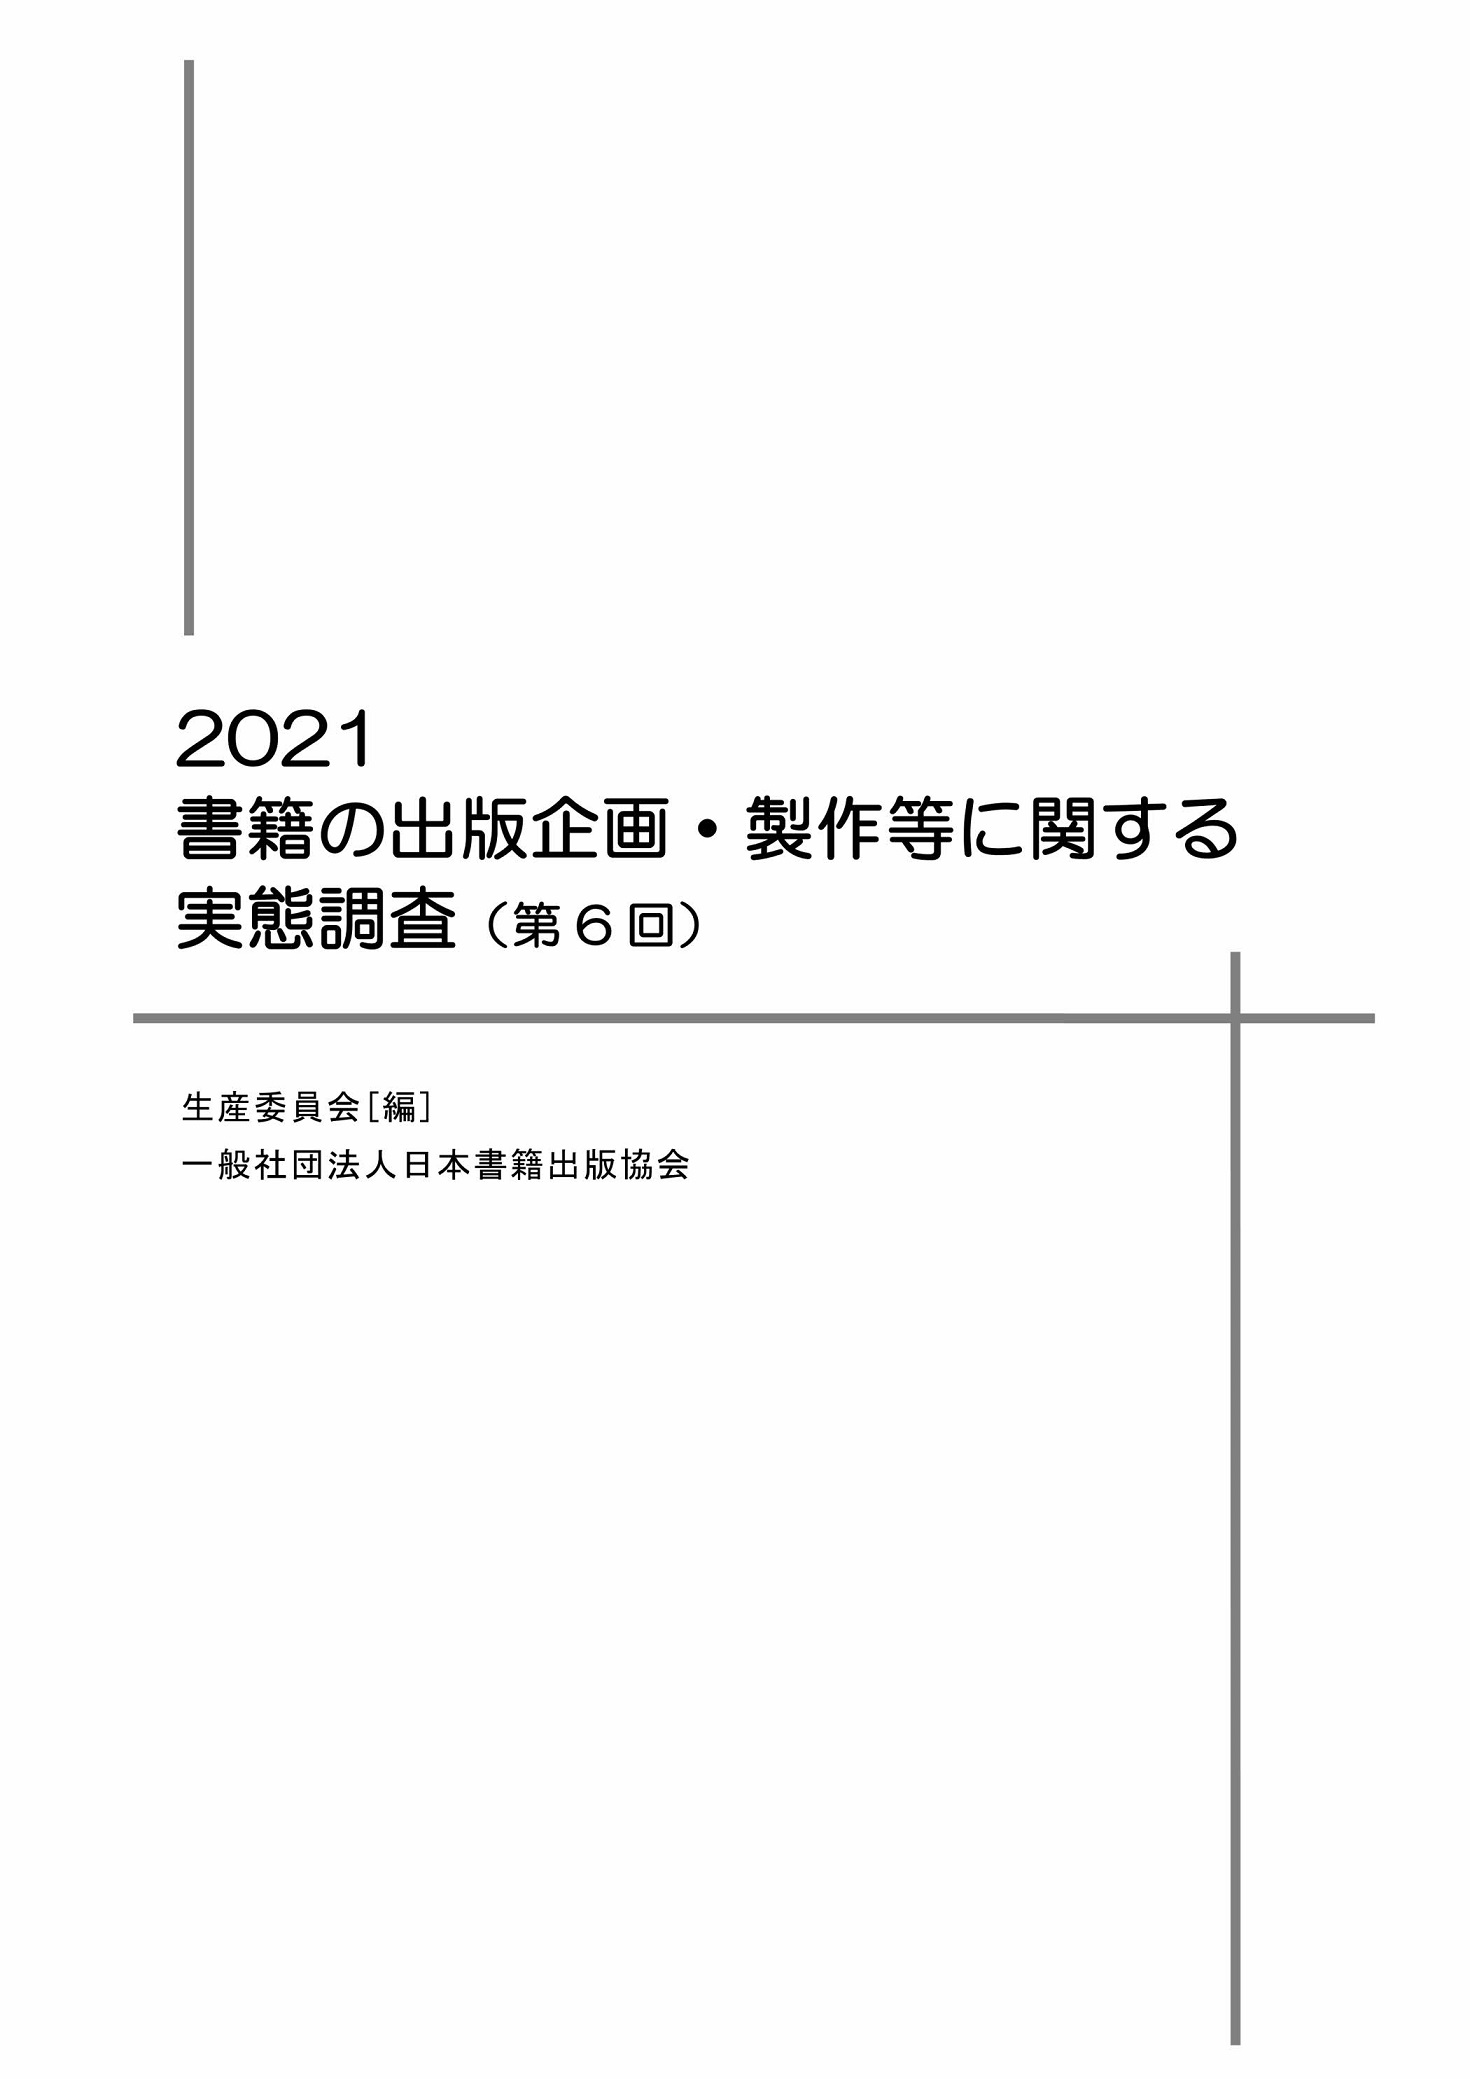 書籍の出版企画・製作等に関する実態調査（第6回）2021年の商品画像